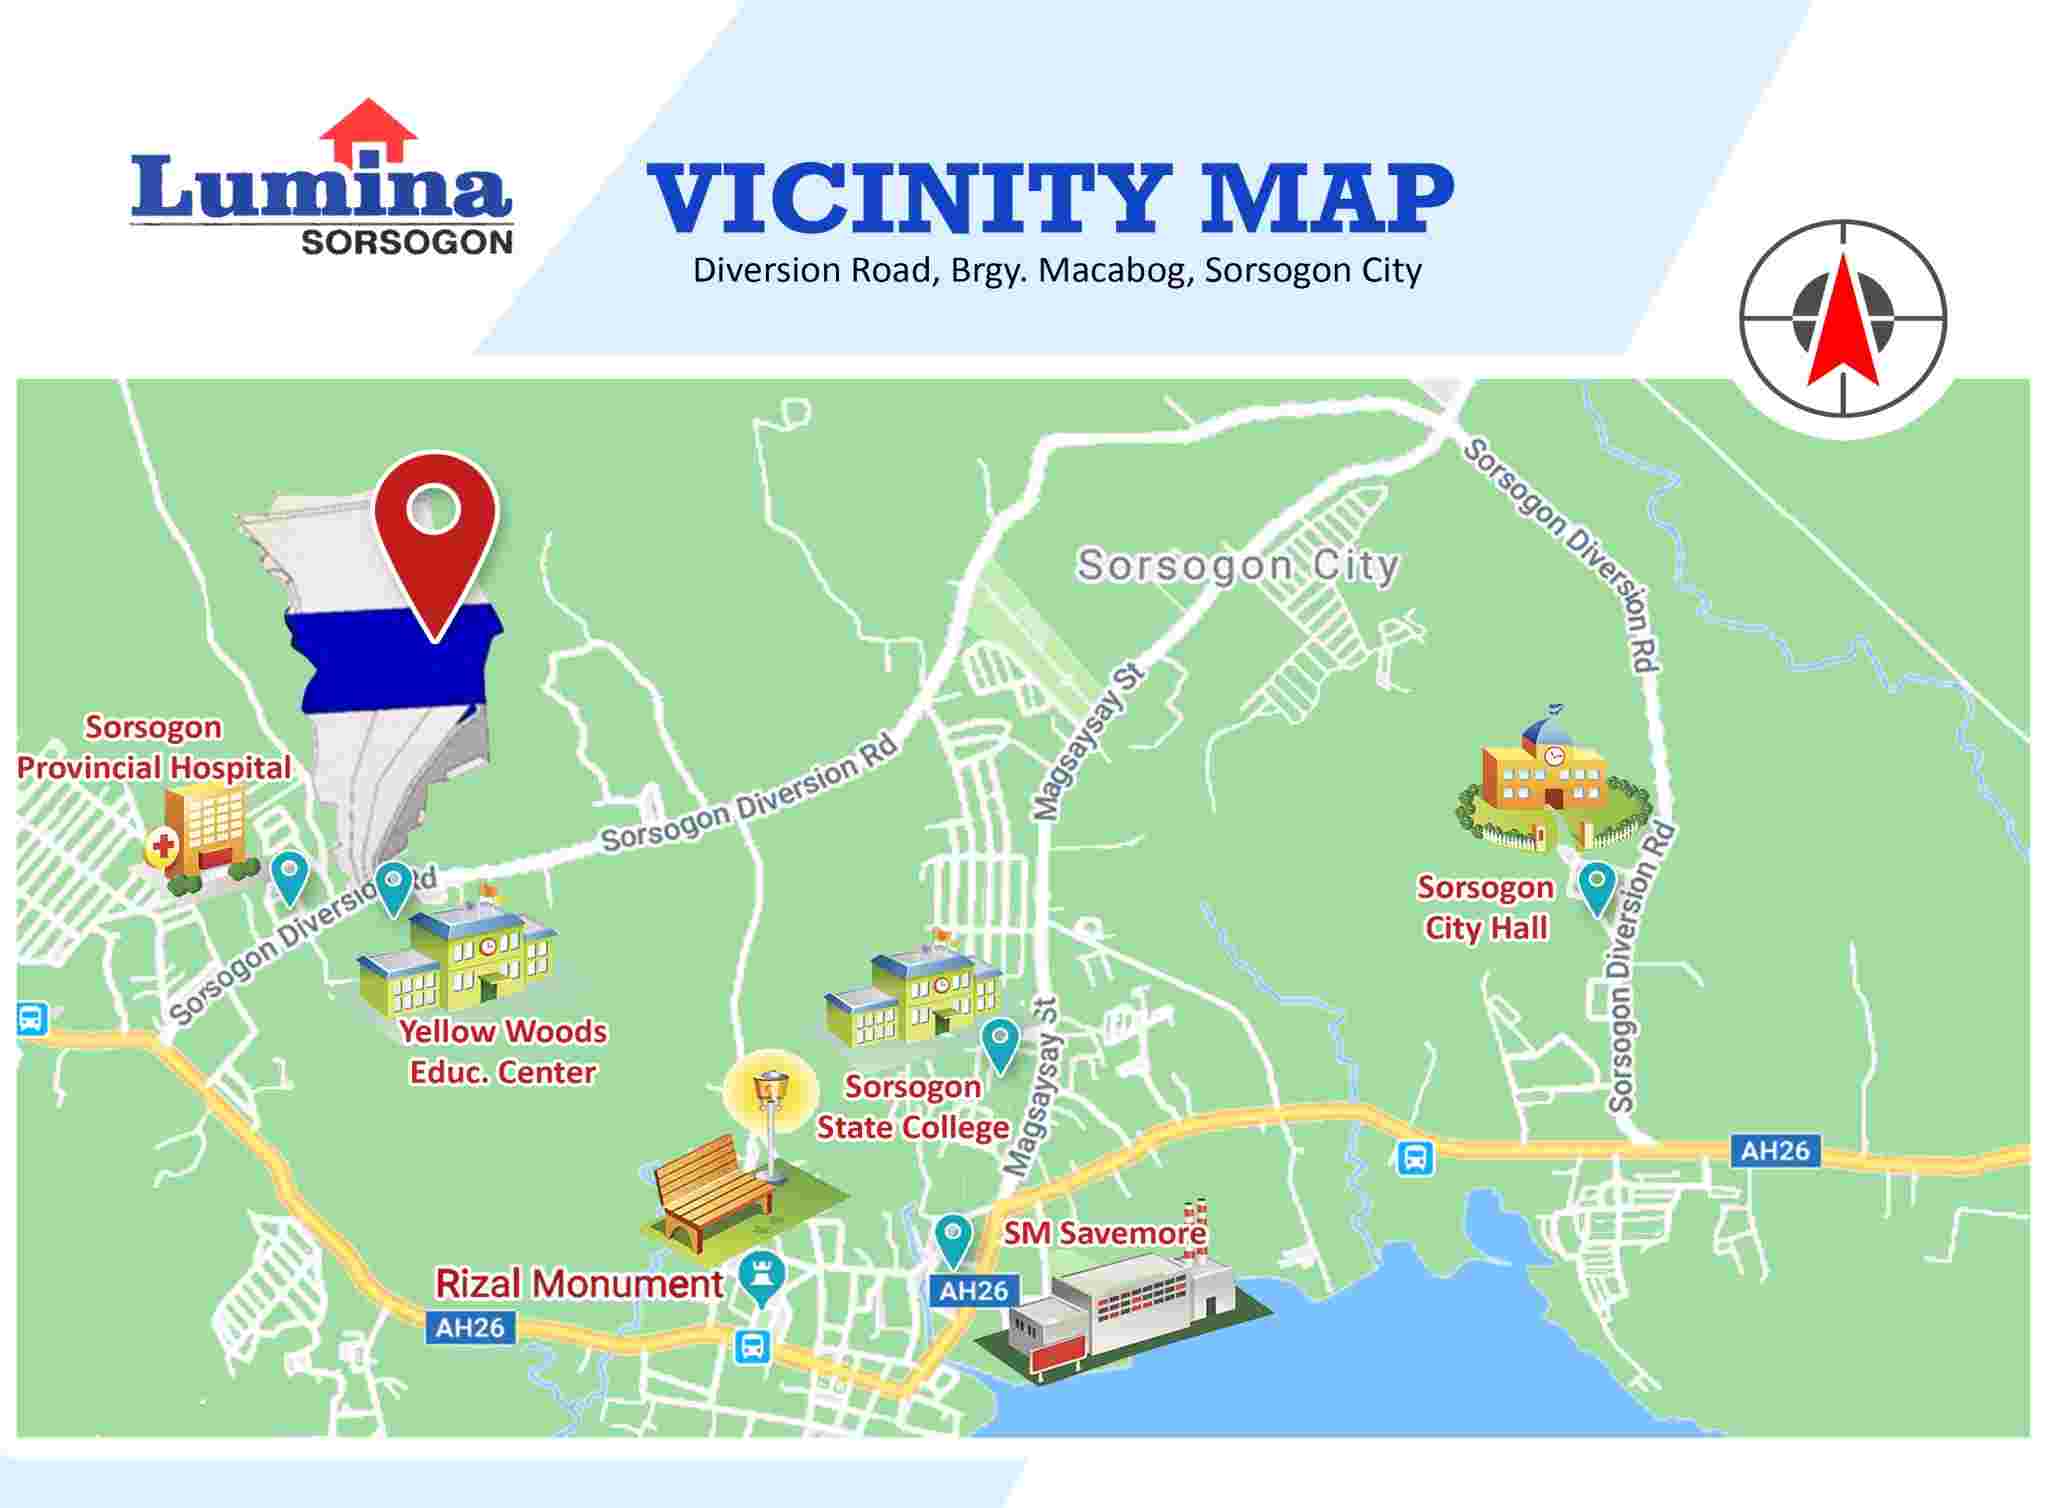 Vicinity-Map-1641799615.jpeg